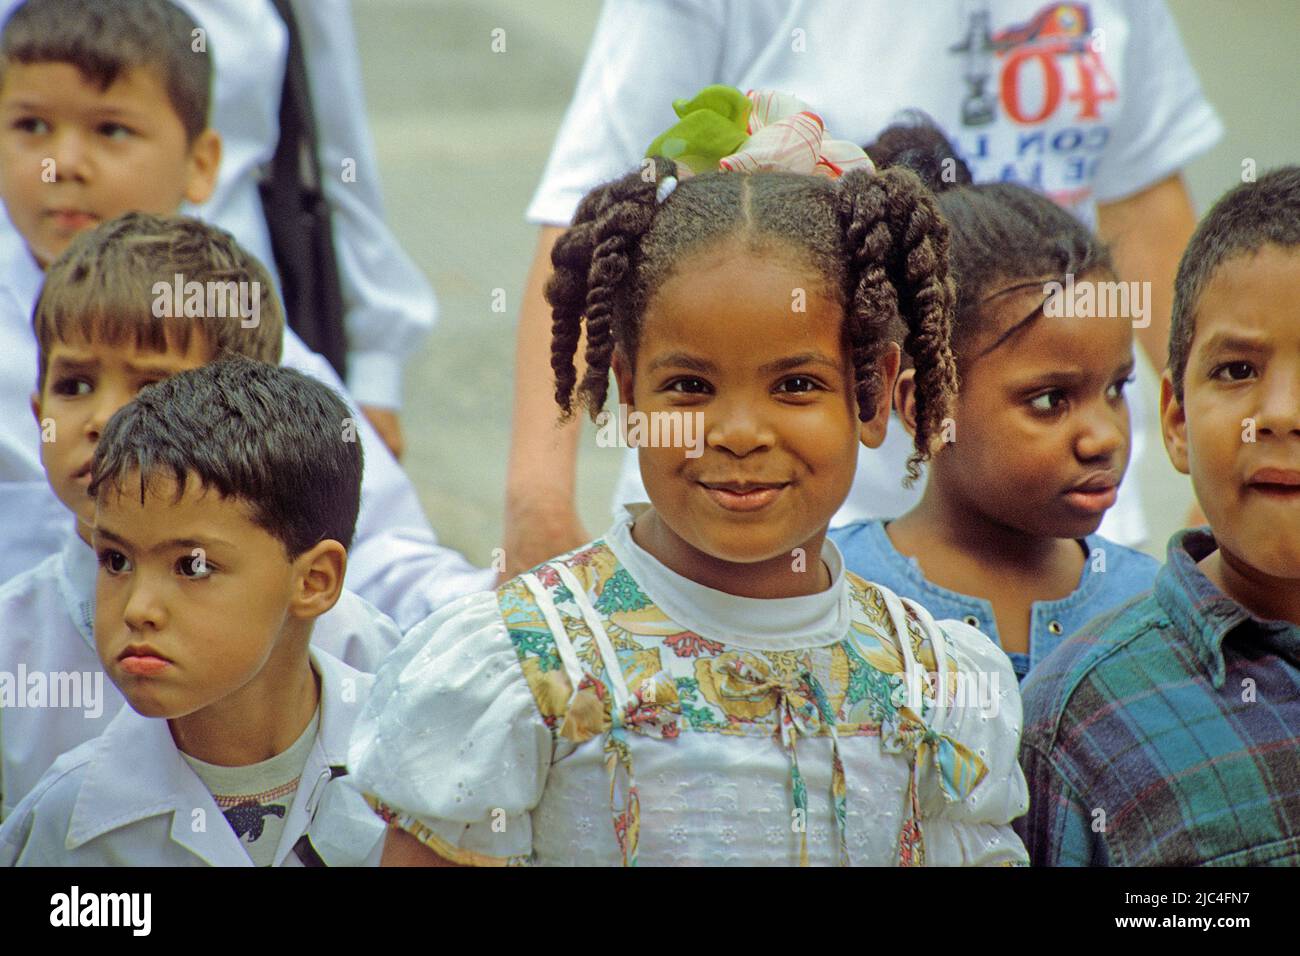 Kubanische Kinder in der Altstadt von Havanna, Kuba, Karibik | Niños cubanos en el casco antiguo de La Habana, Cuba, Caribe Foto de stock